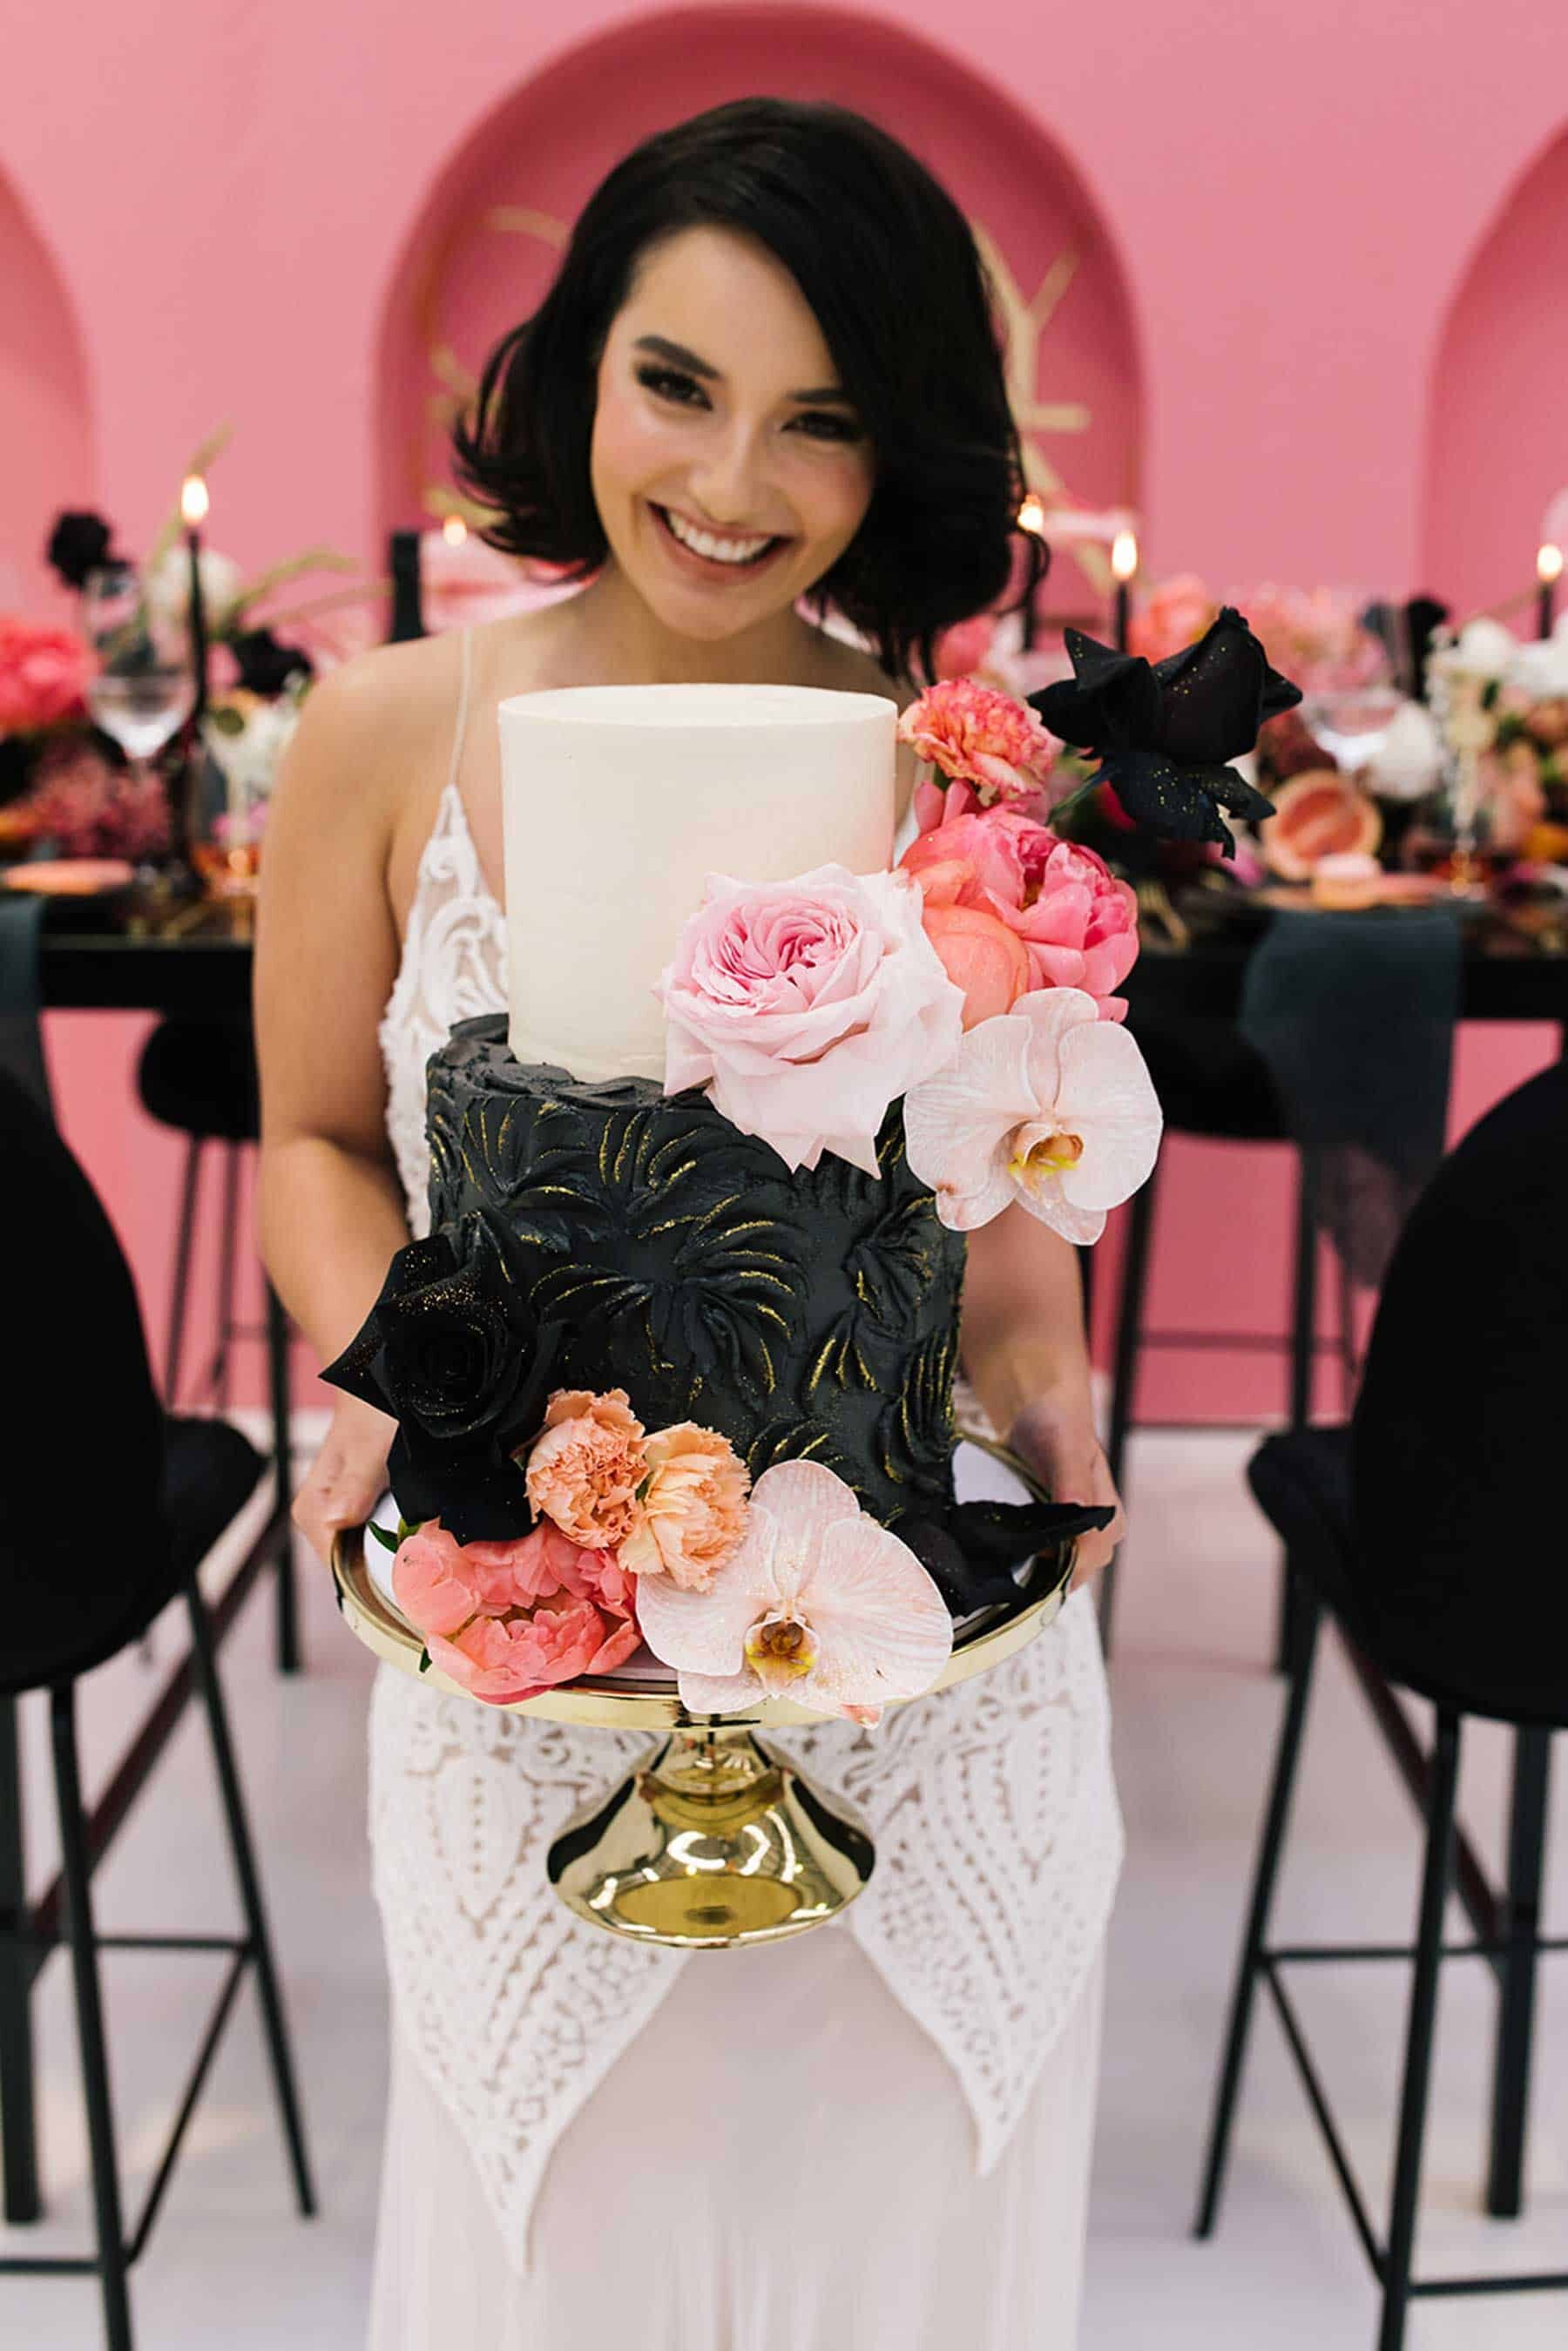 modern pink and black wedding cake